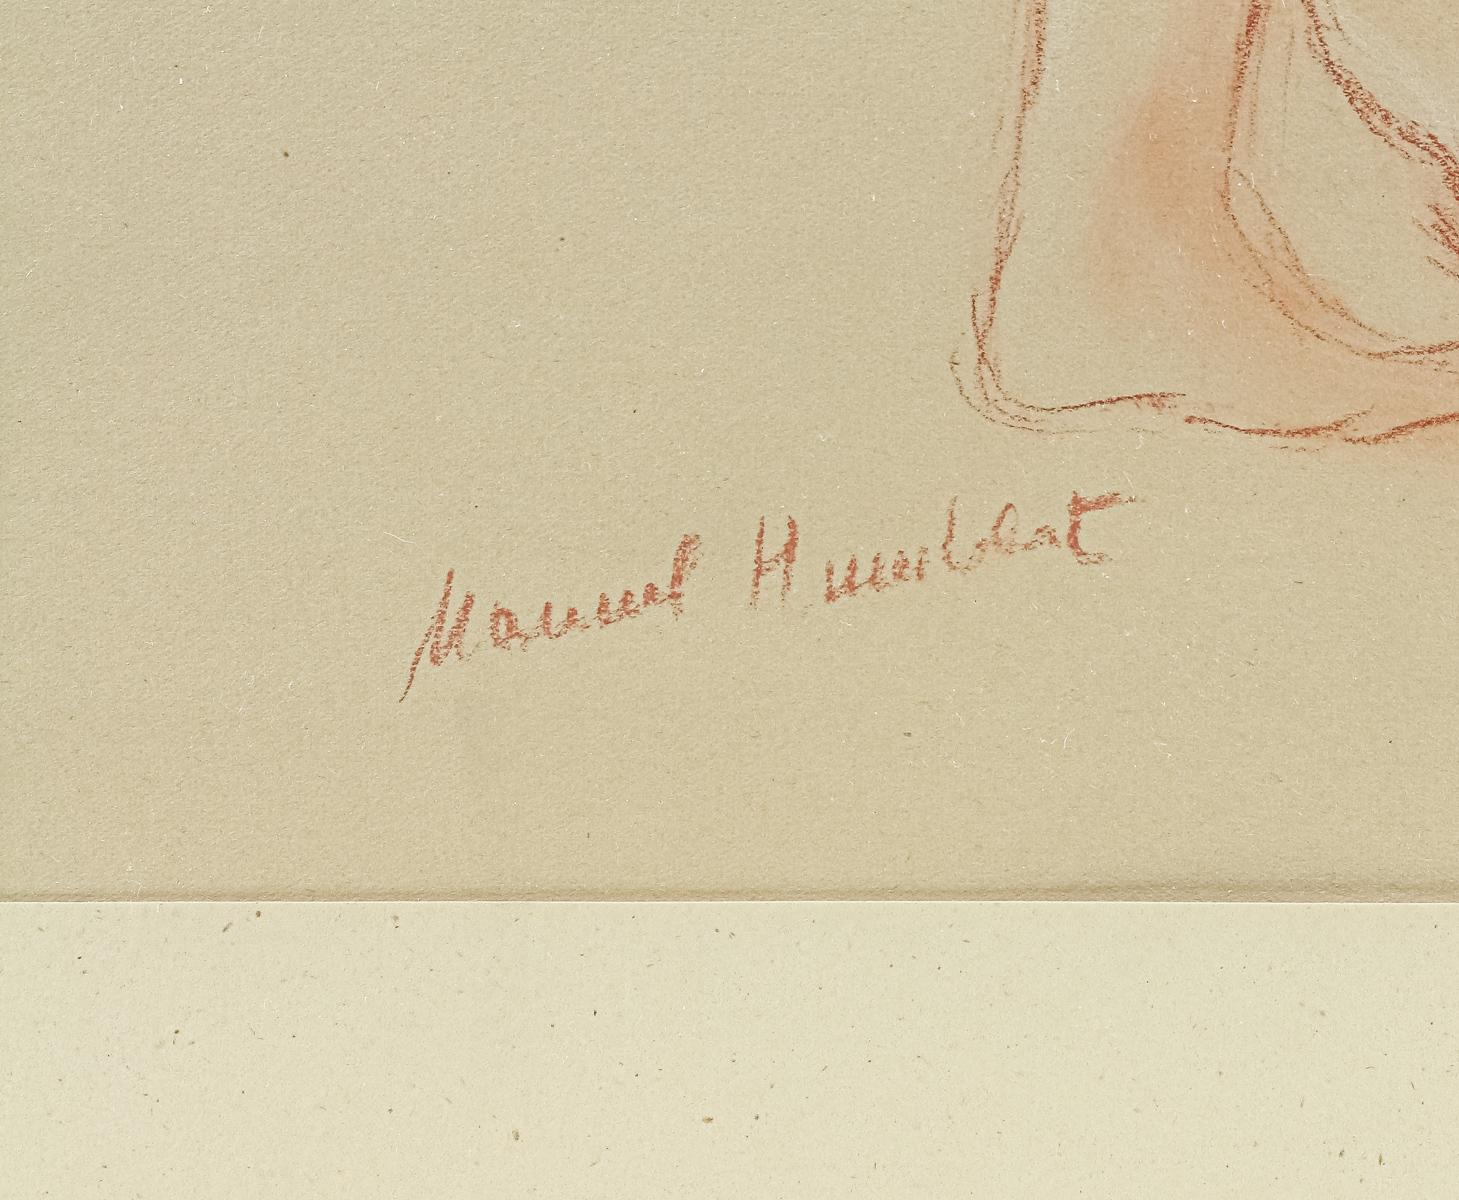 HUMBERT, MANUEL